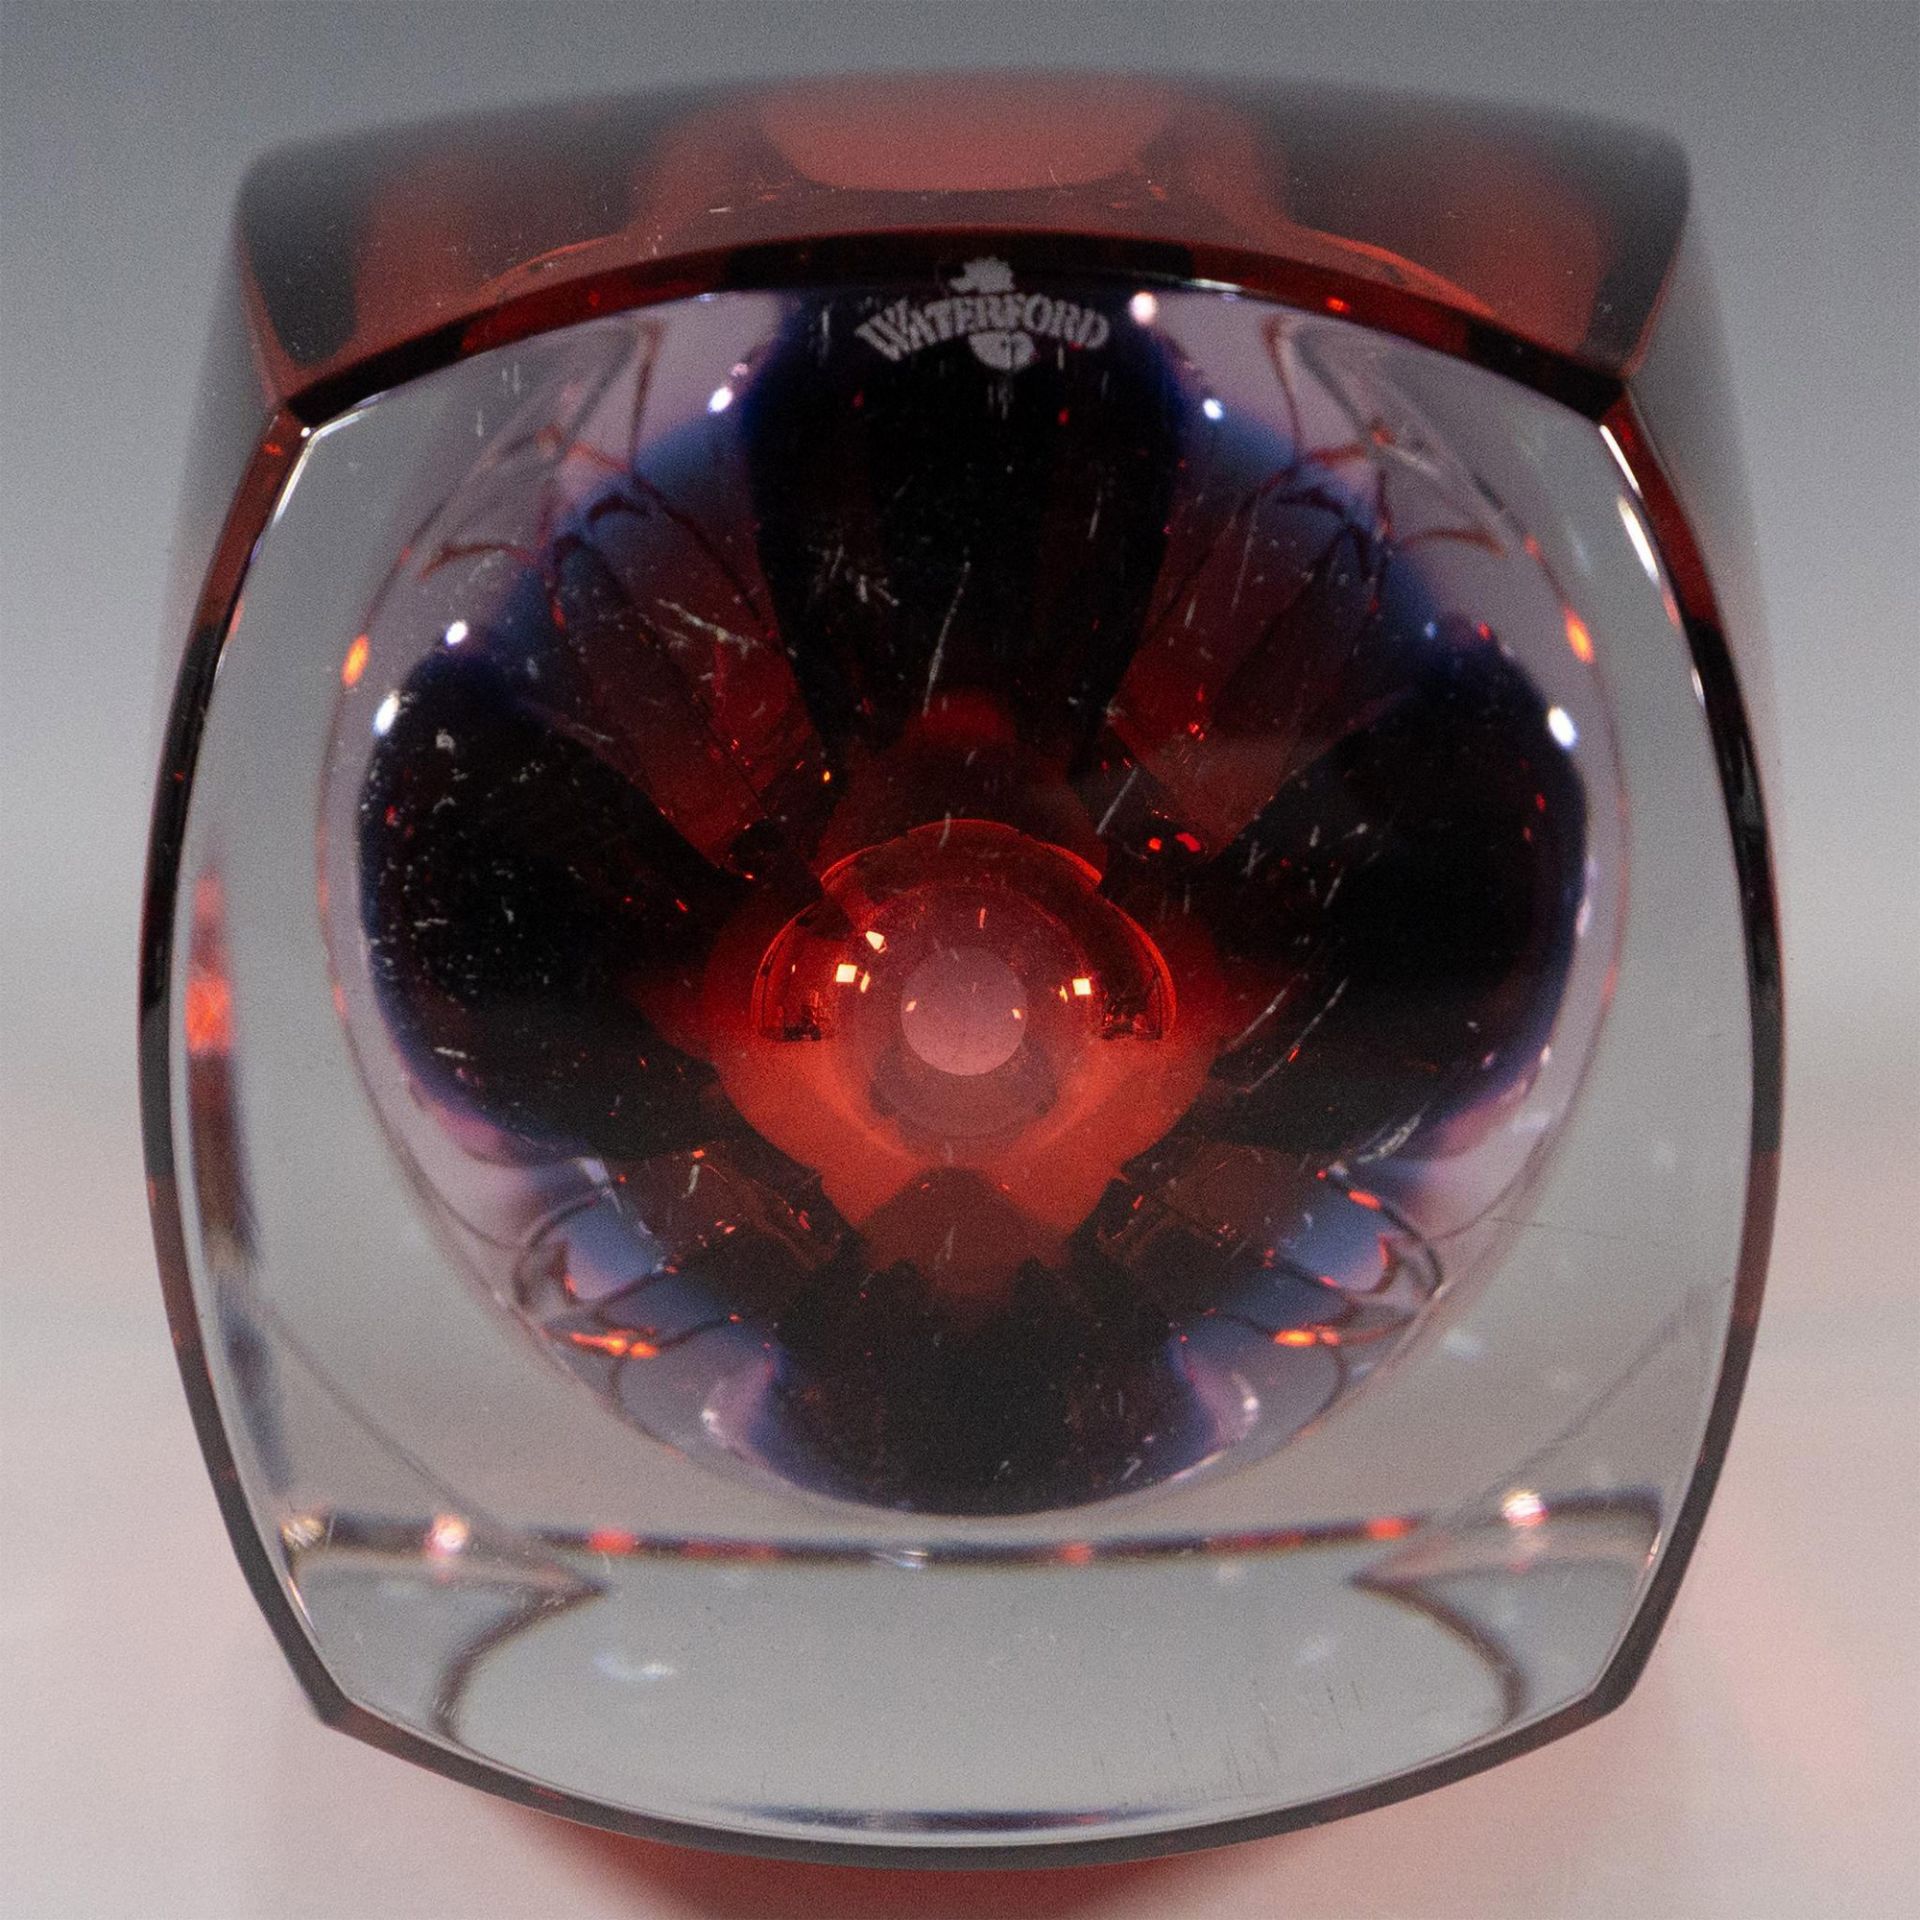 Waterford Crystal Flower Vase, Metra Red - Image 3 of 3